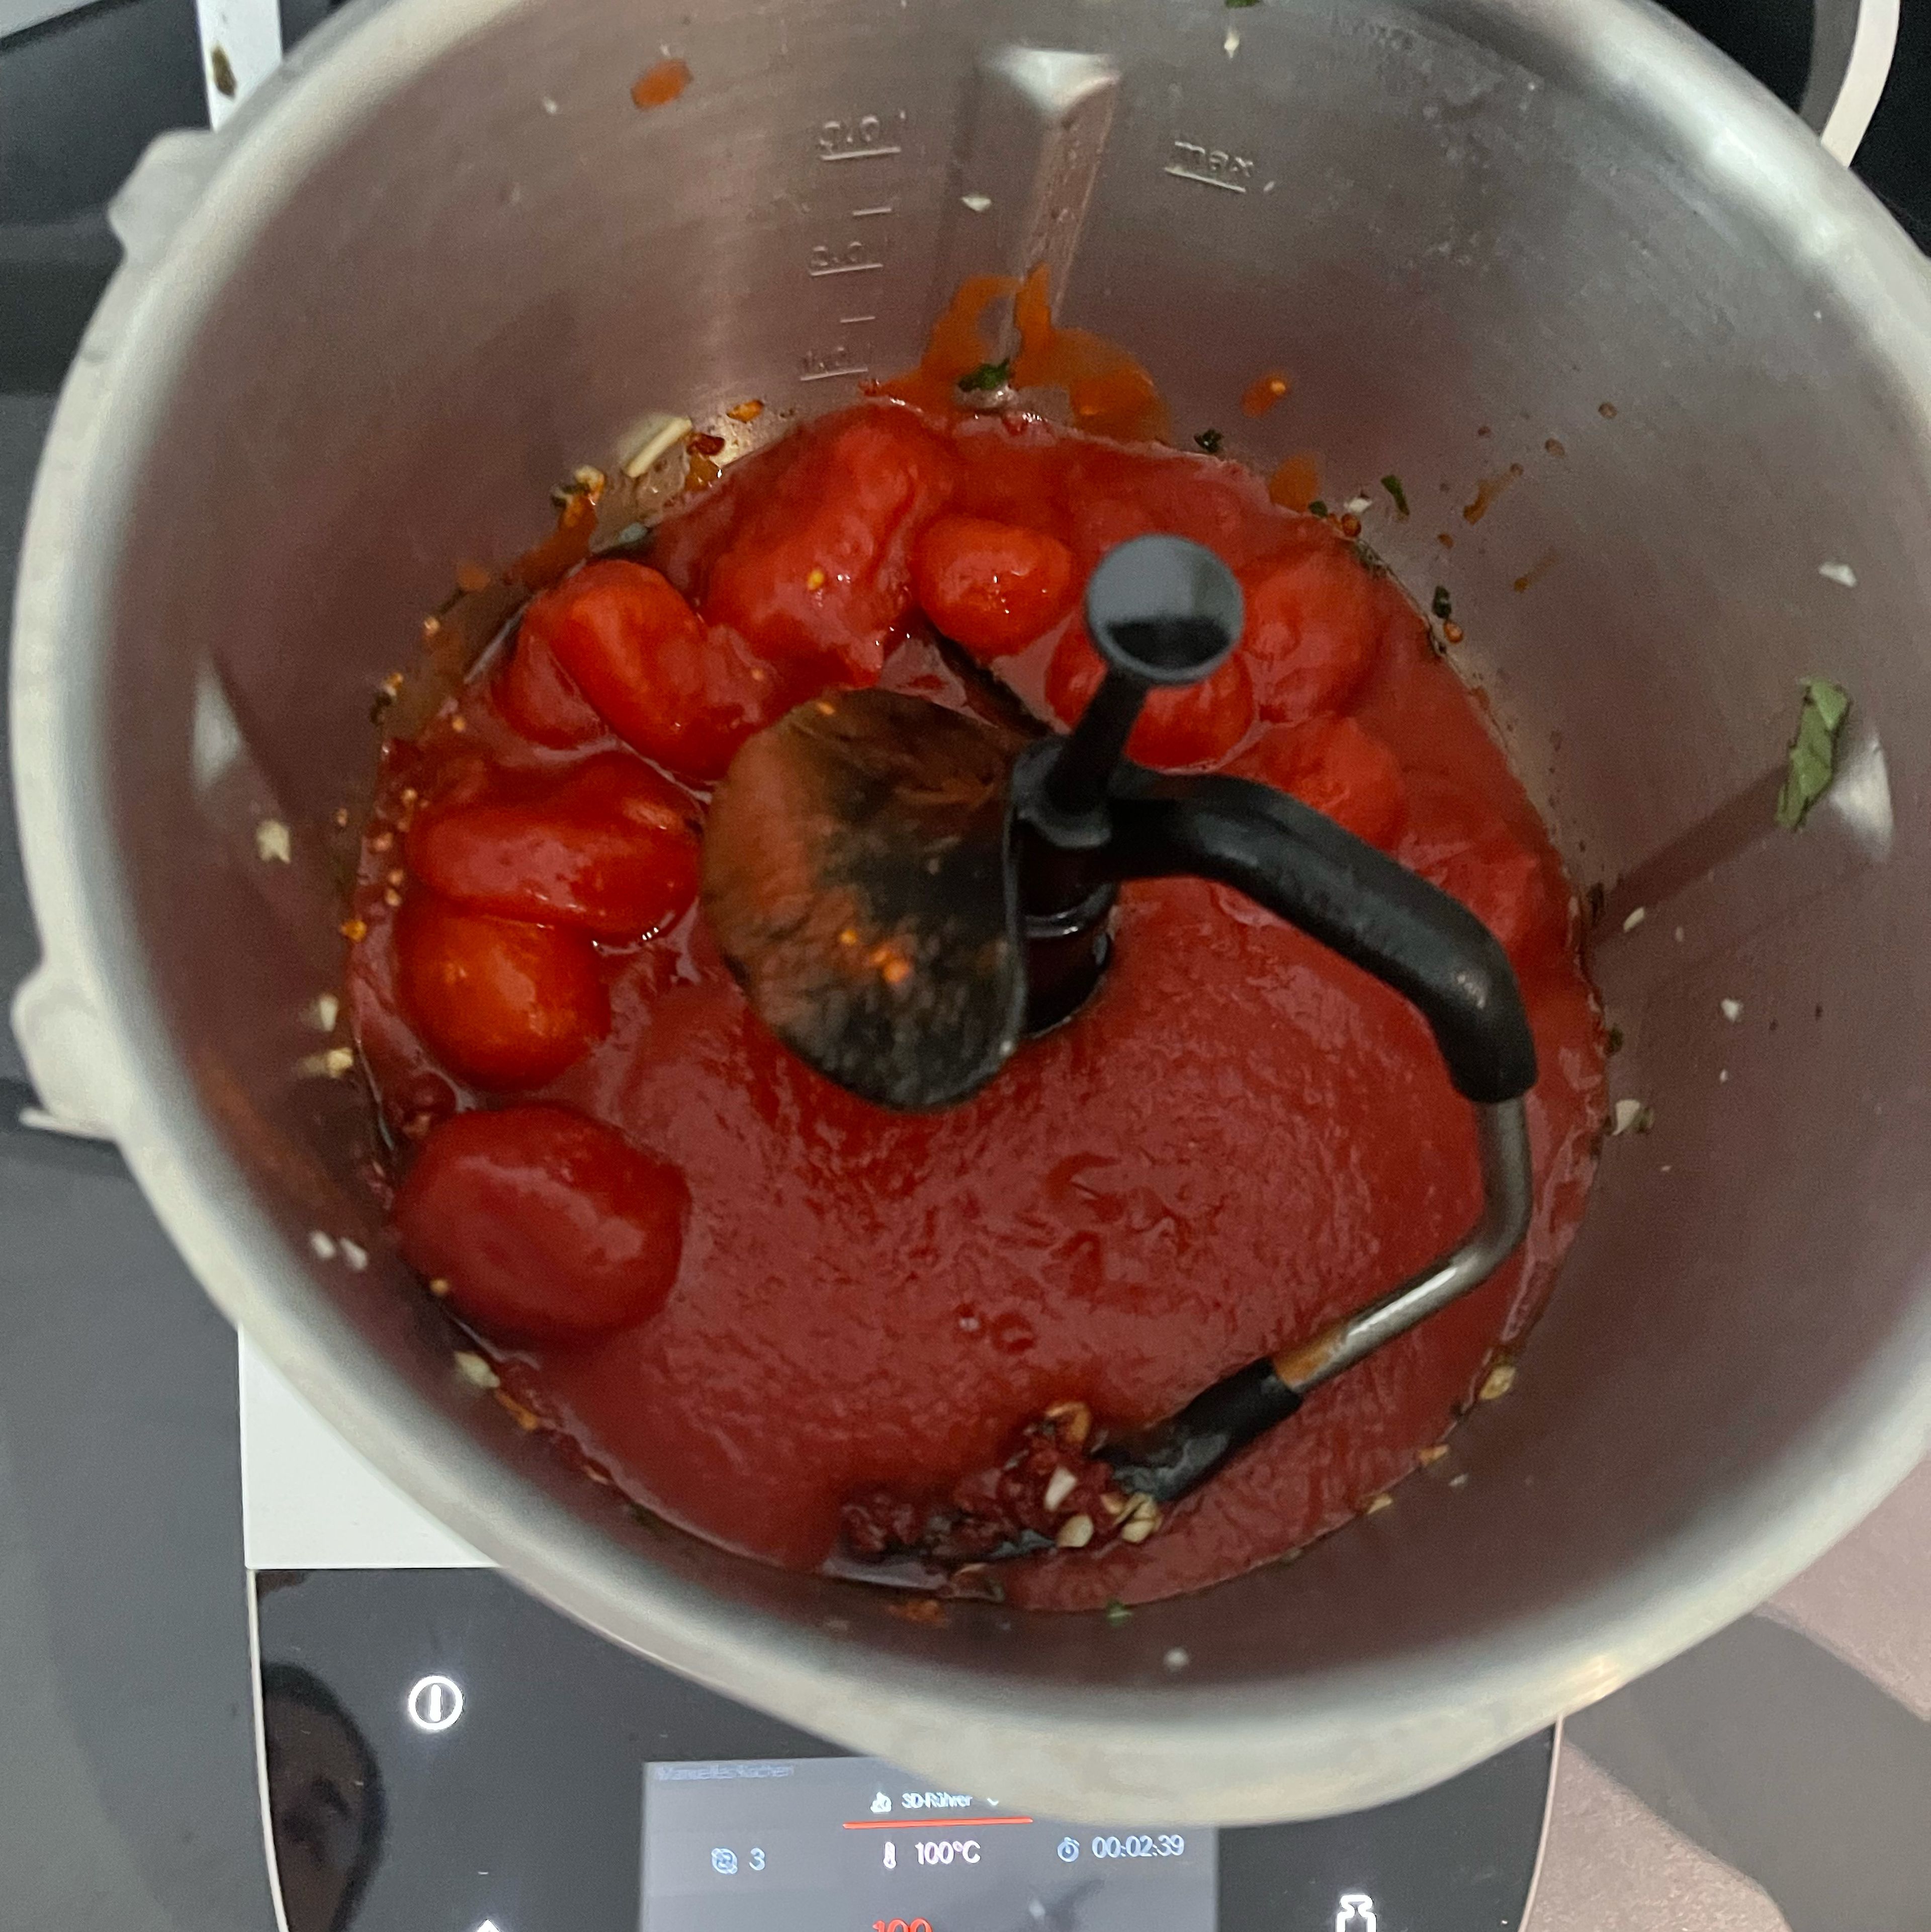 2EL Oliven sowie das Tomatenmark hinzugeben und gemeinsam mit der Knoblauch-Basilikum Mischung andünsten (3D-Rührer I Stufe 3 I 100°C I 3 Minuten). Im Anschluss die Dosen-Datterini, Passata, Gemüsebrühe, eine Prise Zucker sowie Salz und Pfeffer hinzufügen und die Tomatensoße köcheln lassen (3D-Rührer I Stufe 3 I 90°C I 15 Minuten).